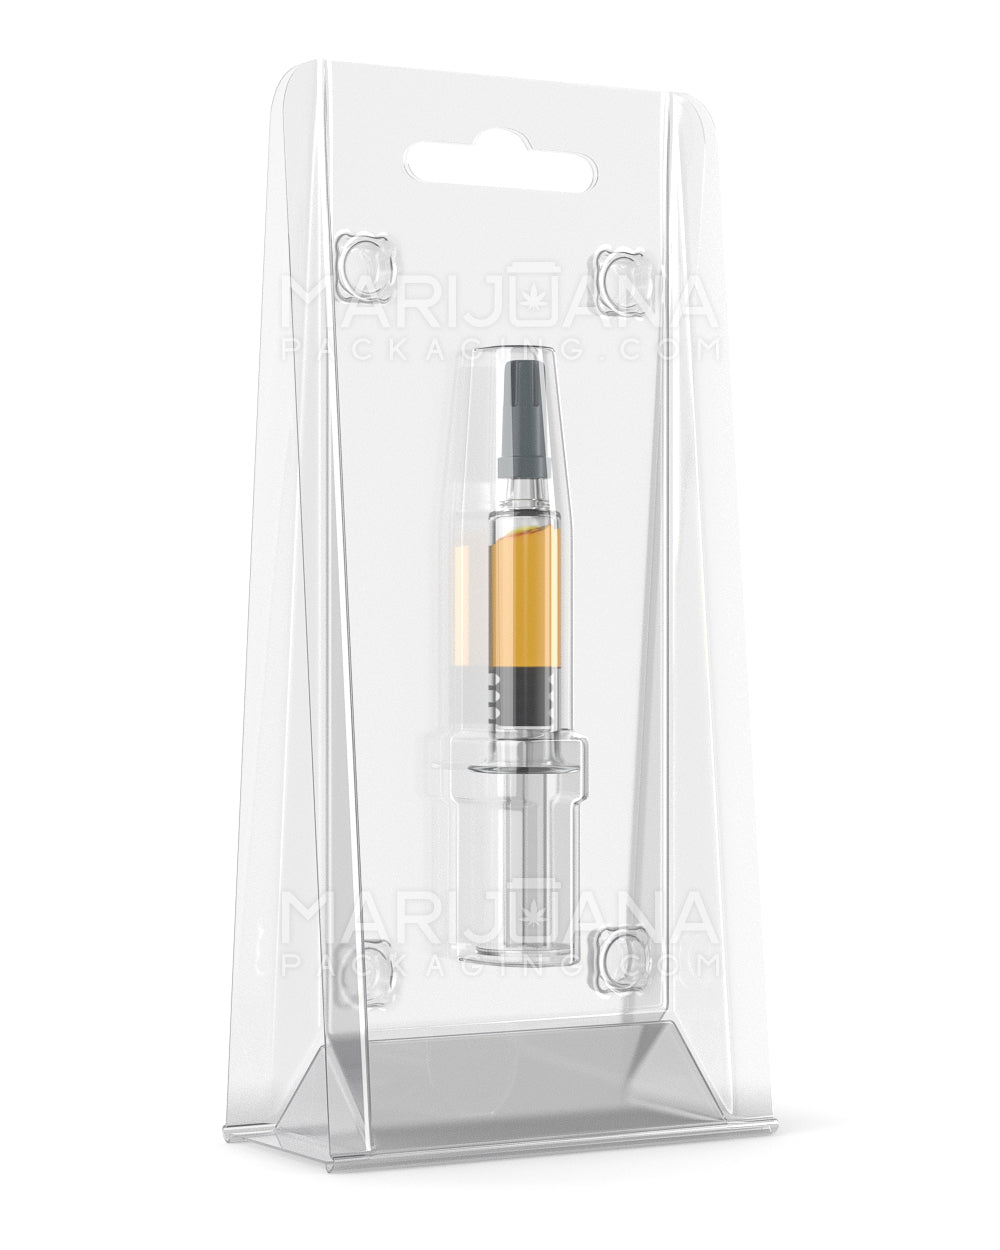 Clam Shell Blister Packaging for Disposable 120mm Vapor Pens